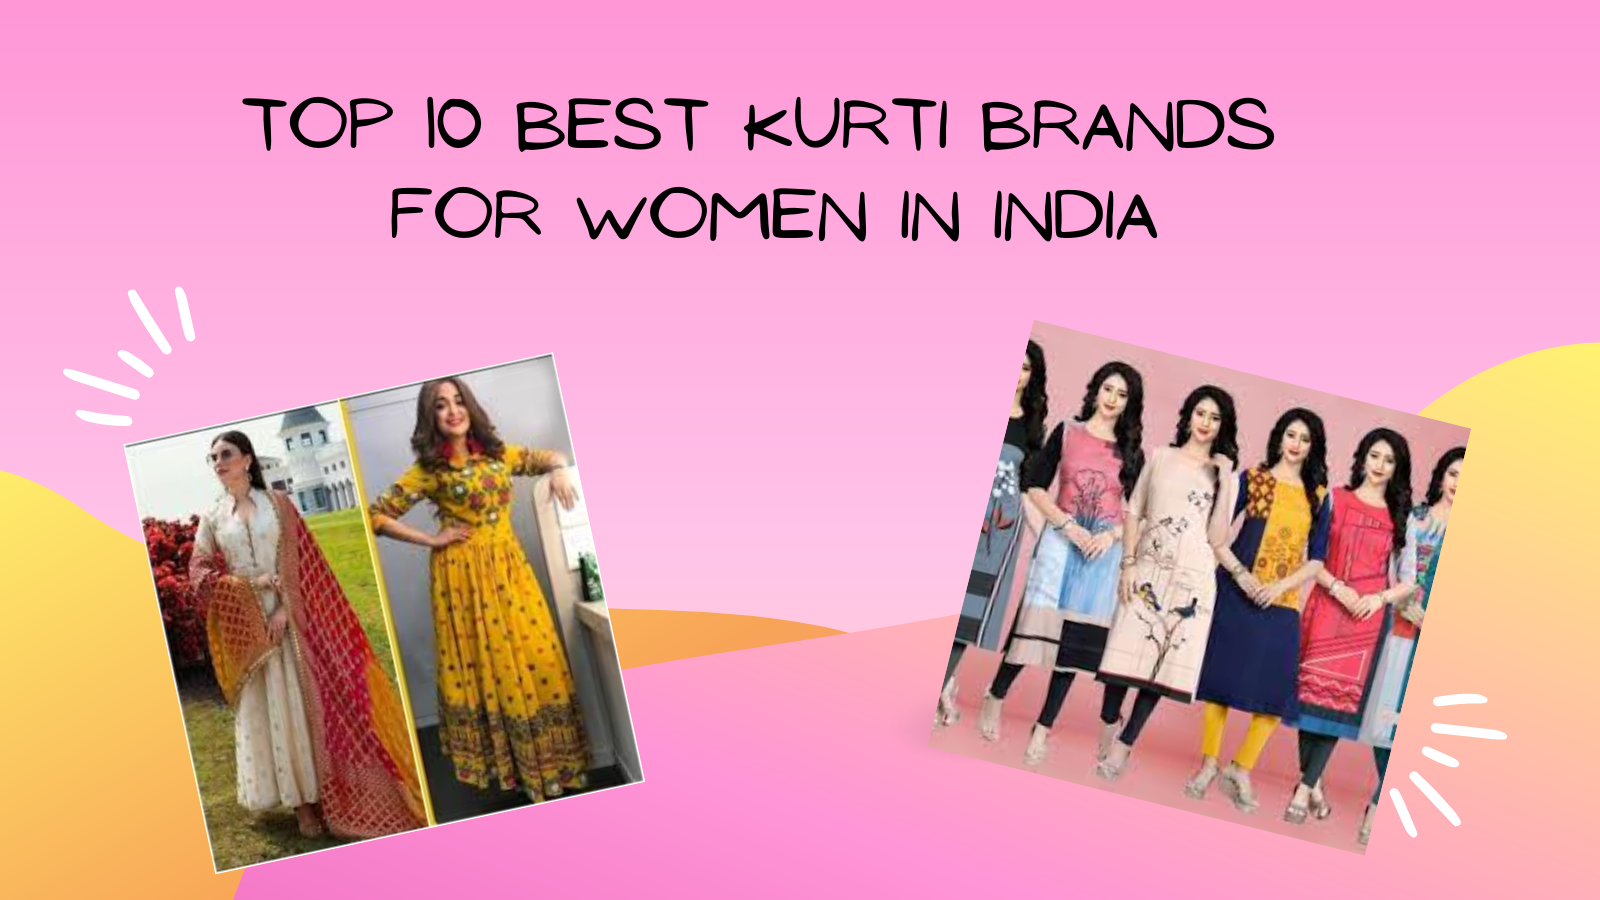 Top 10 best kurti brands for women in India